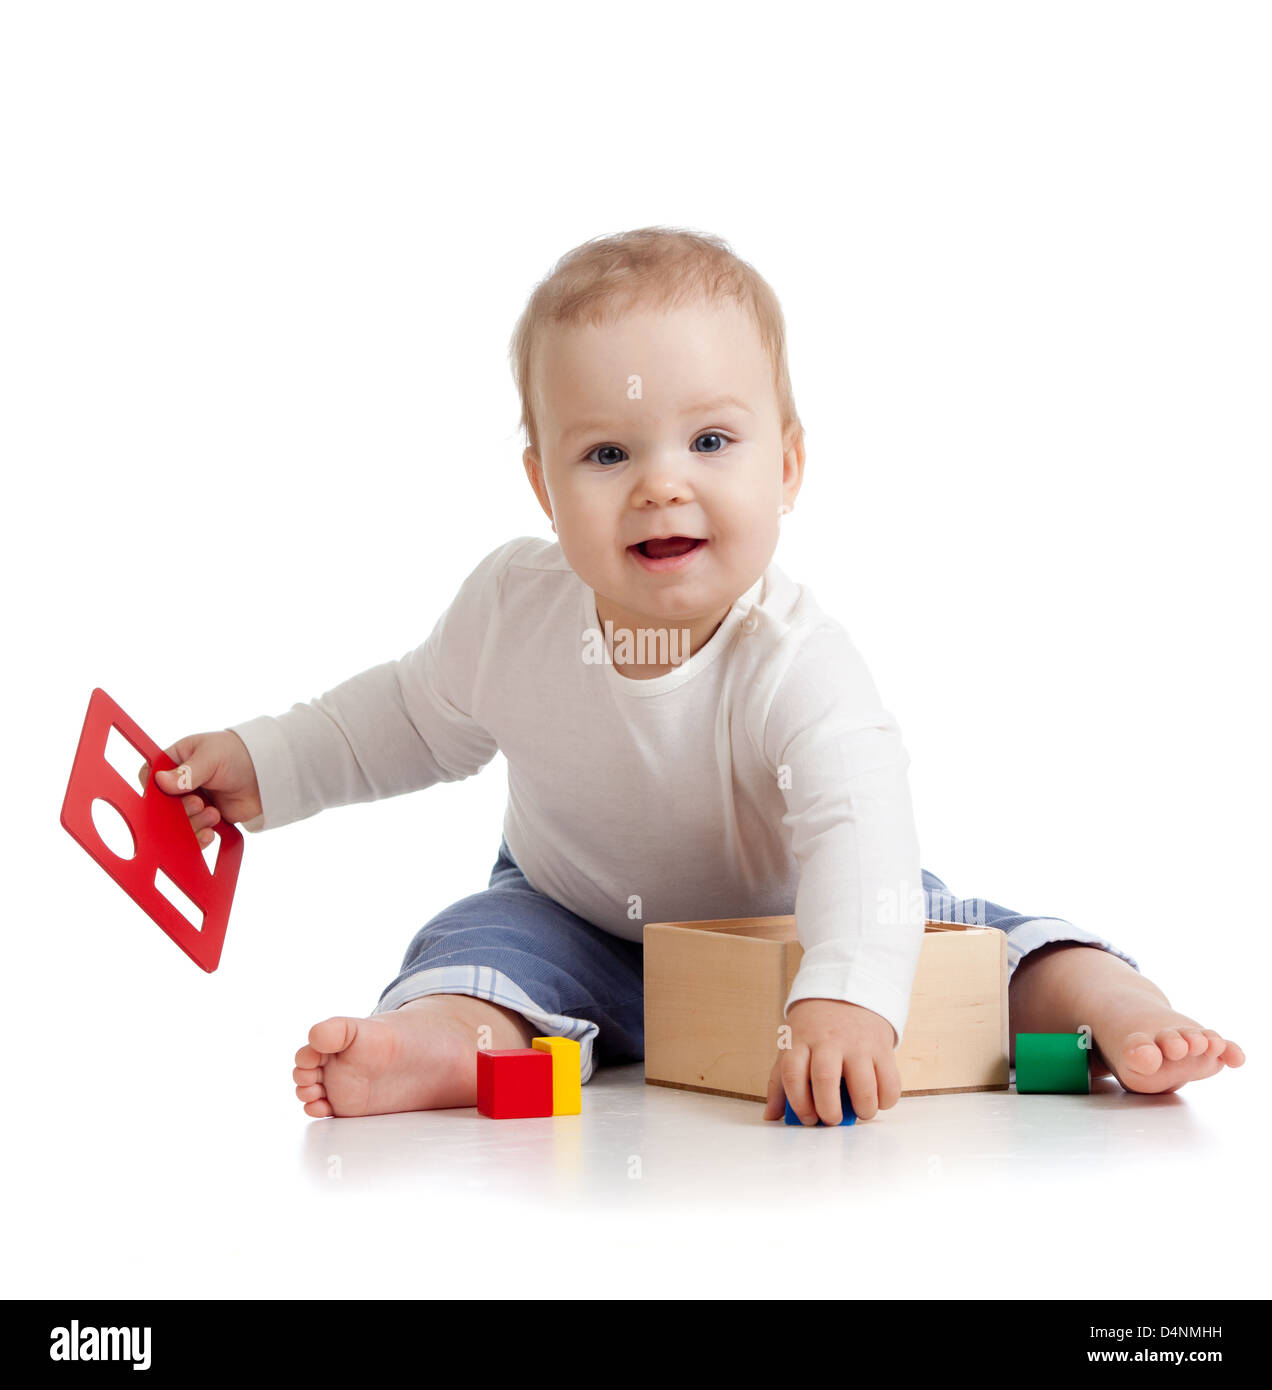 Pretty baby con colore giocattolo educativo Foto Stock